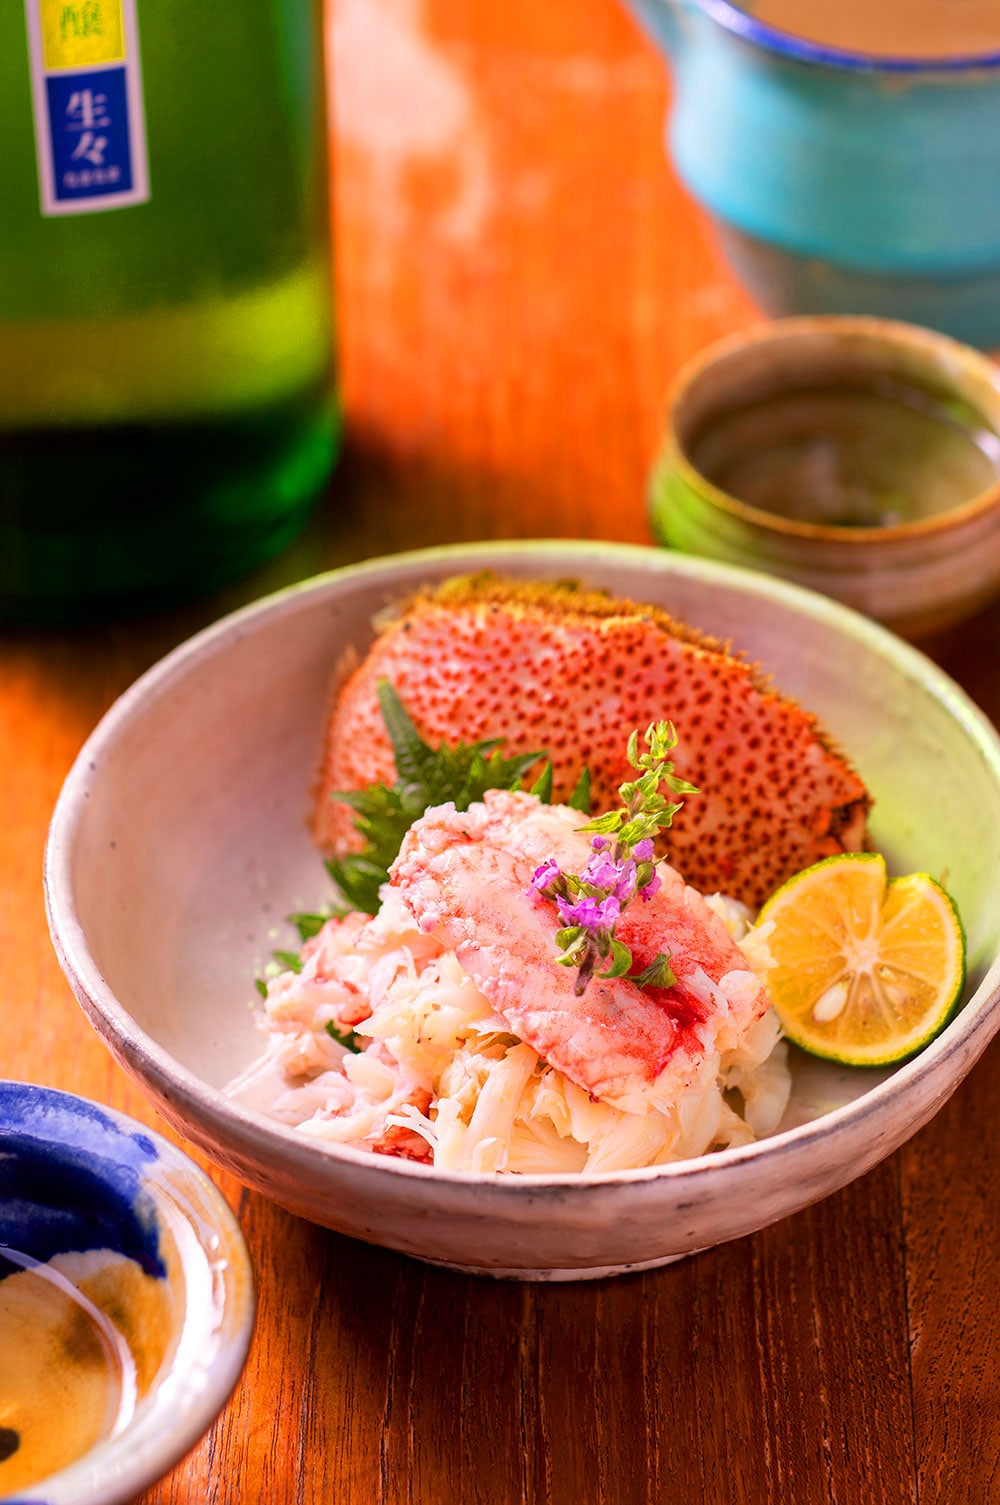 新鮮な北海道産毛蟹は、シンプルにボイルして特製蟹酢でどうぞ。